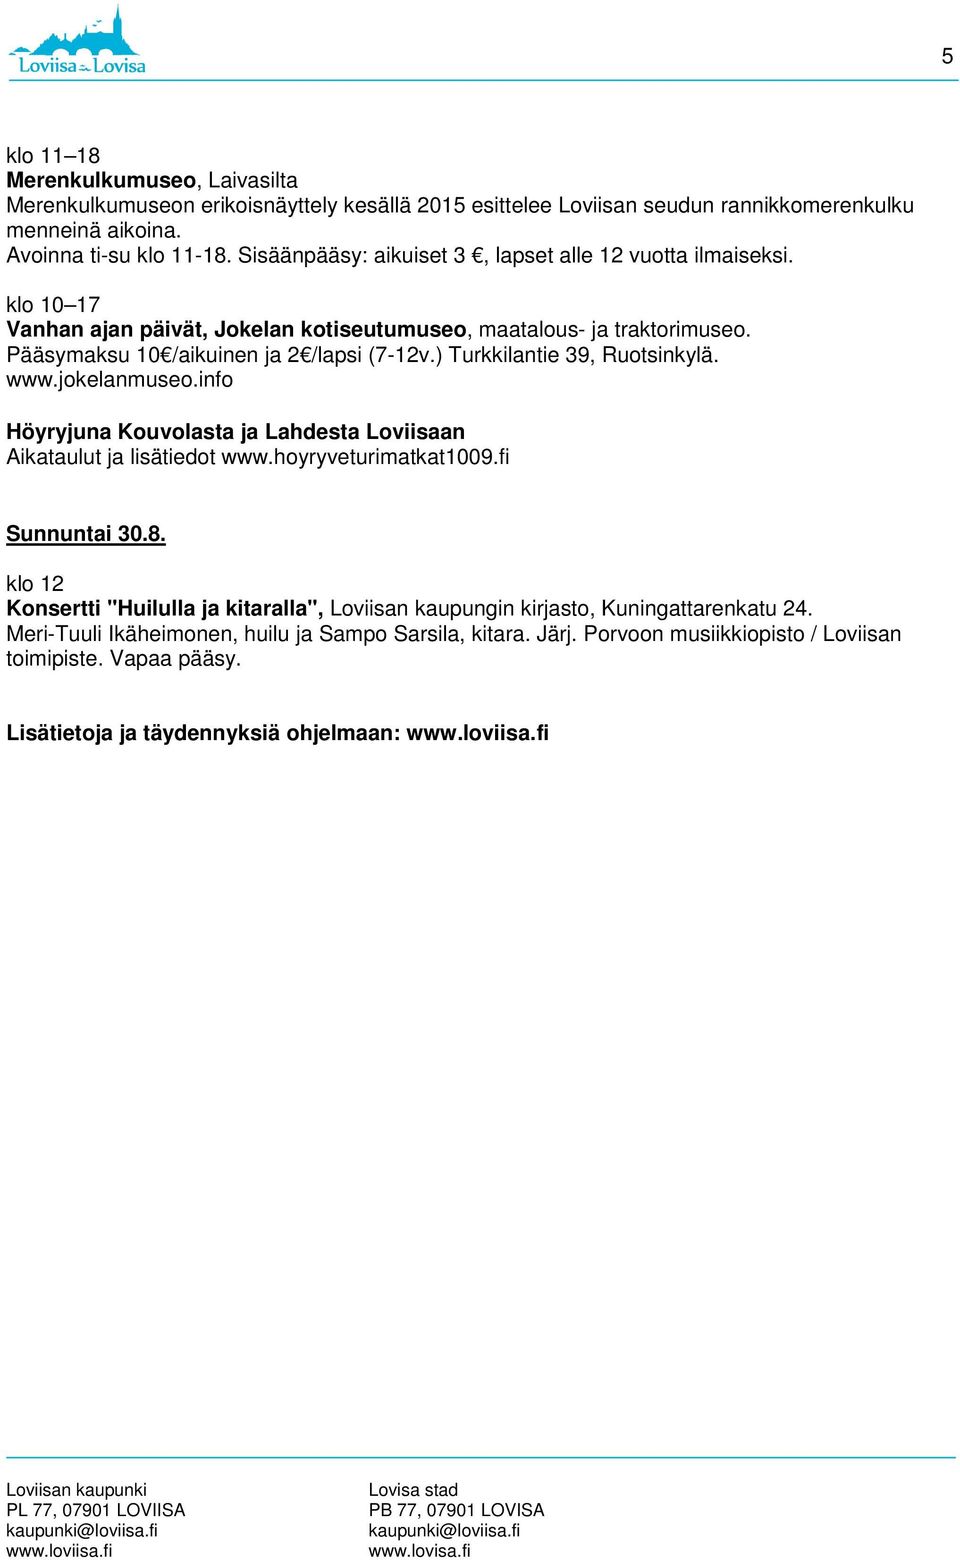 ) Turkkilantie 39, Ruotsinkylä. www.jokelanmuseo.info Höyryjuna Kouvolasta ja Lahdesta Loviisaan Aikataulut ja lisätiedot www.hoyryveturimatkat1009.fi Sunnuntai 30.8.